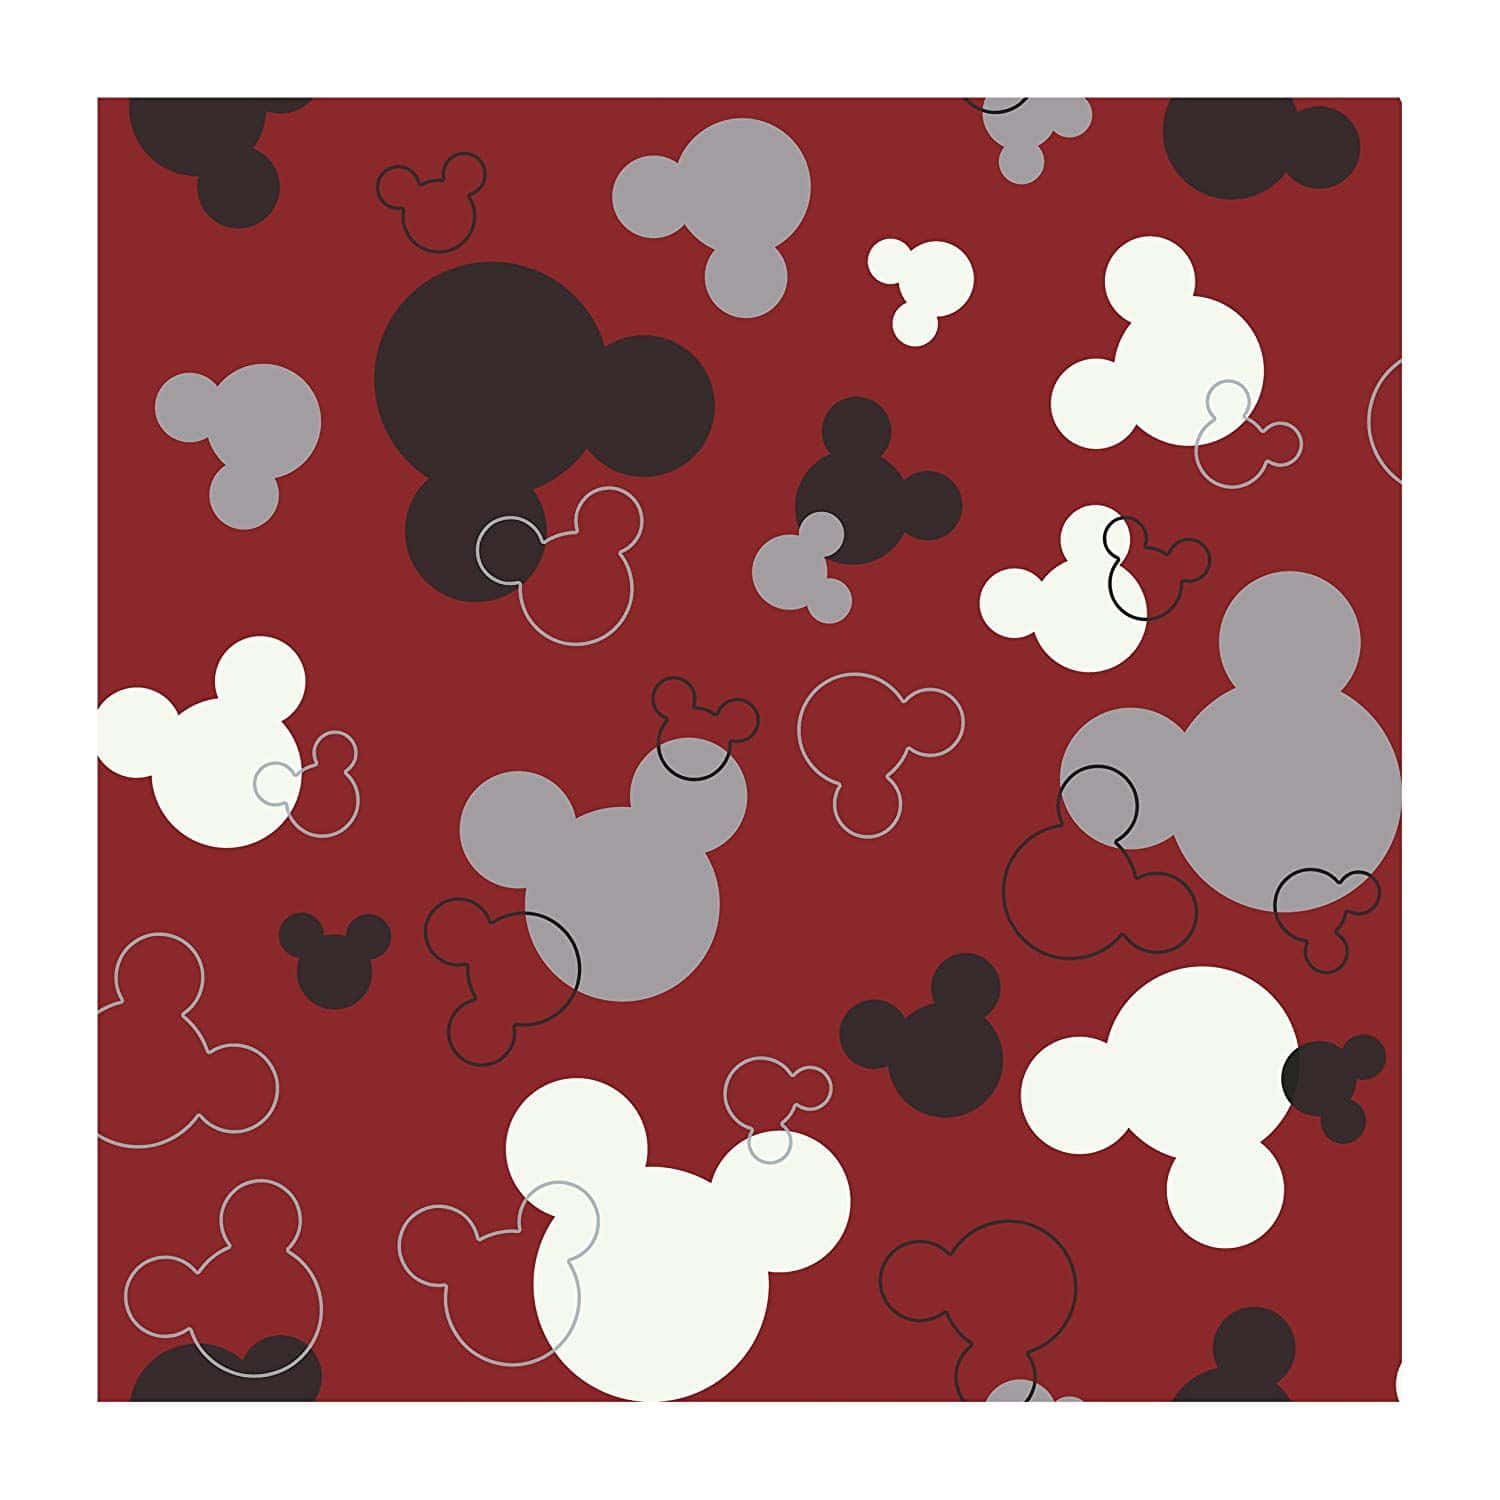 Einzeitloser Favorit: Mickey Mouse Ohren! Wallpaper